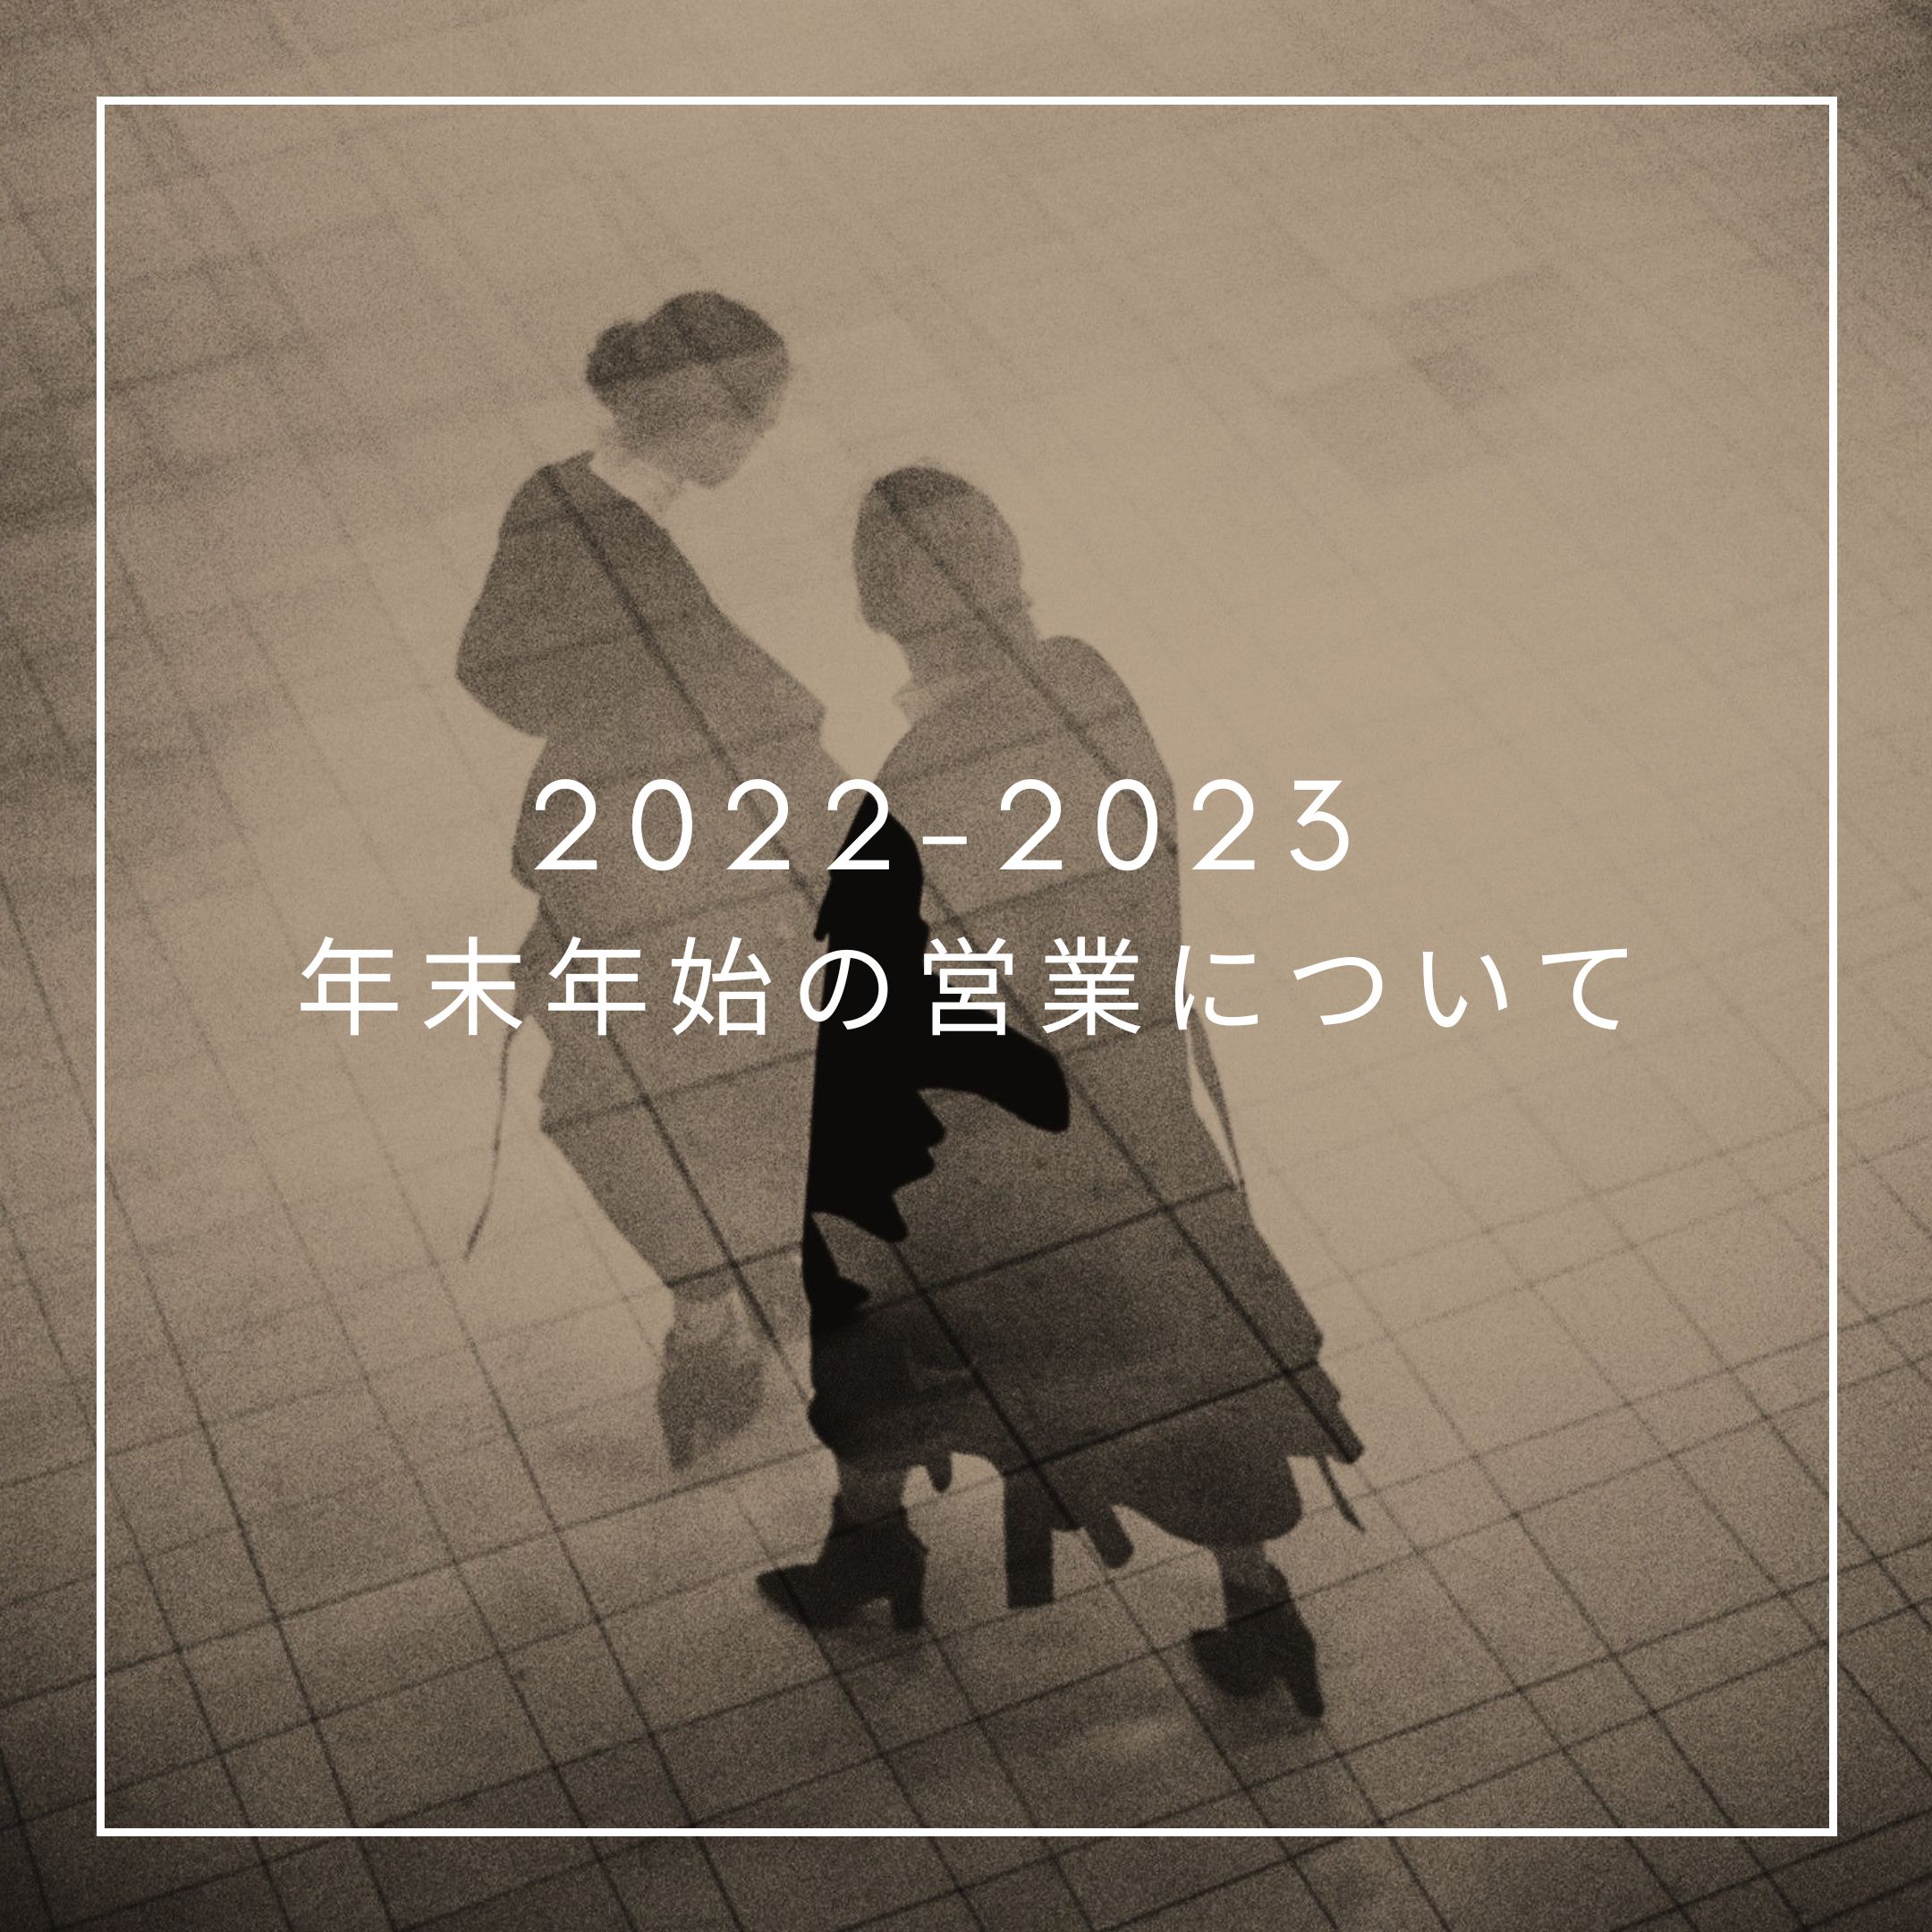 2022-2023 年末年始の営業についてのお知らせ